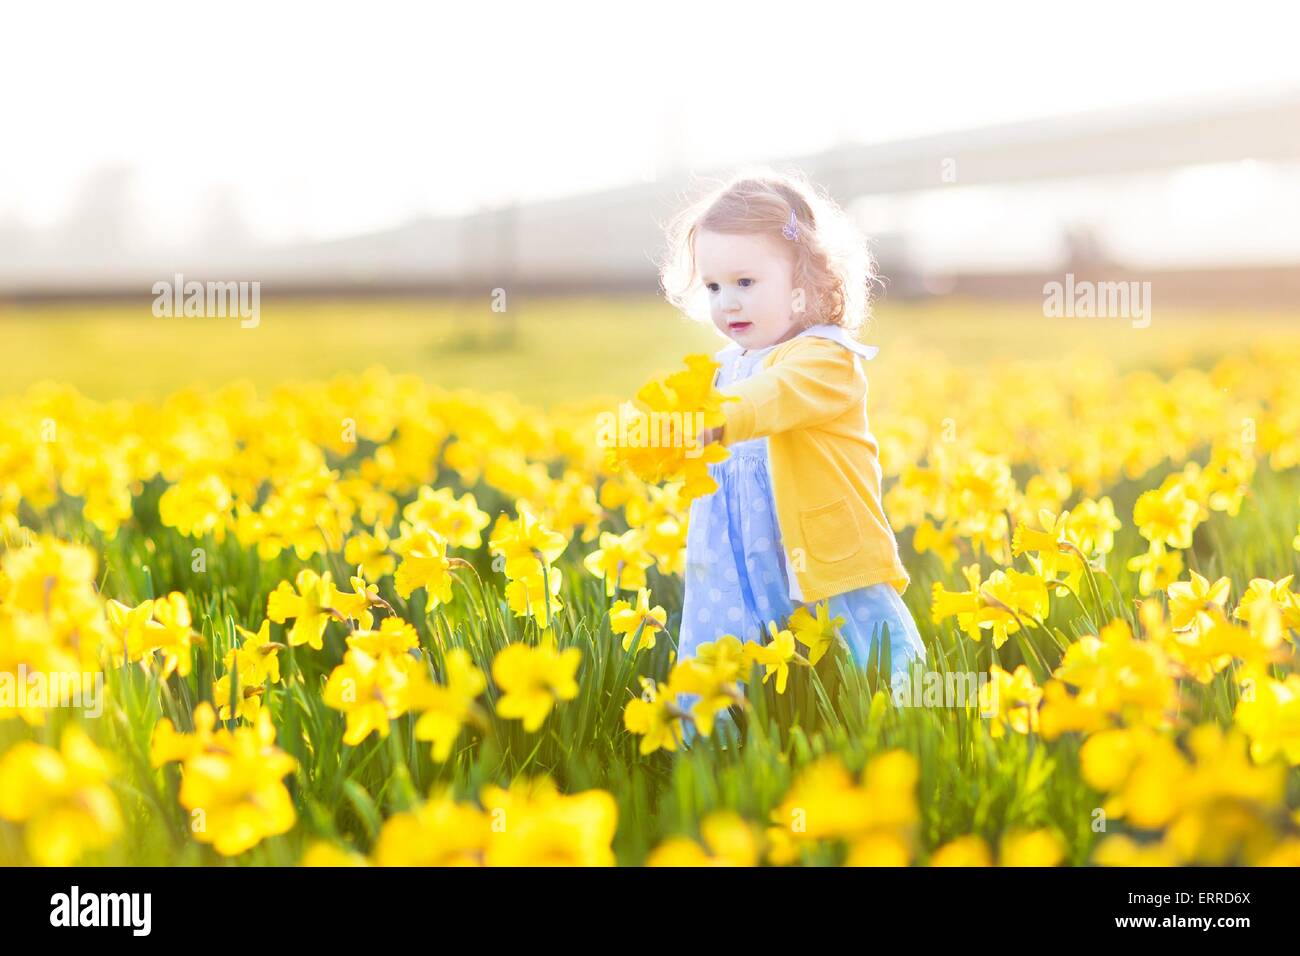 Schöne lockige Kleinkind Mädchen in einem blauen Kleid an einem sonnigen Sommerabend in einem Feld der gelben Narzisse Blumen spielen Stockfoto